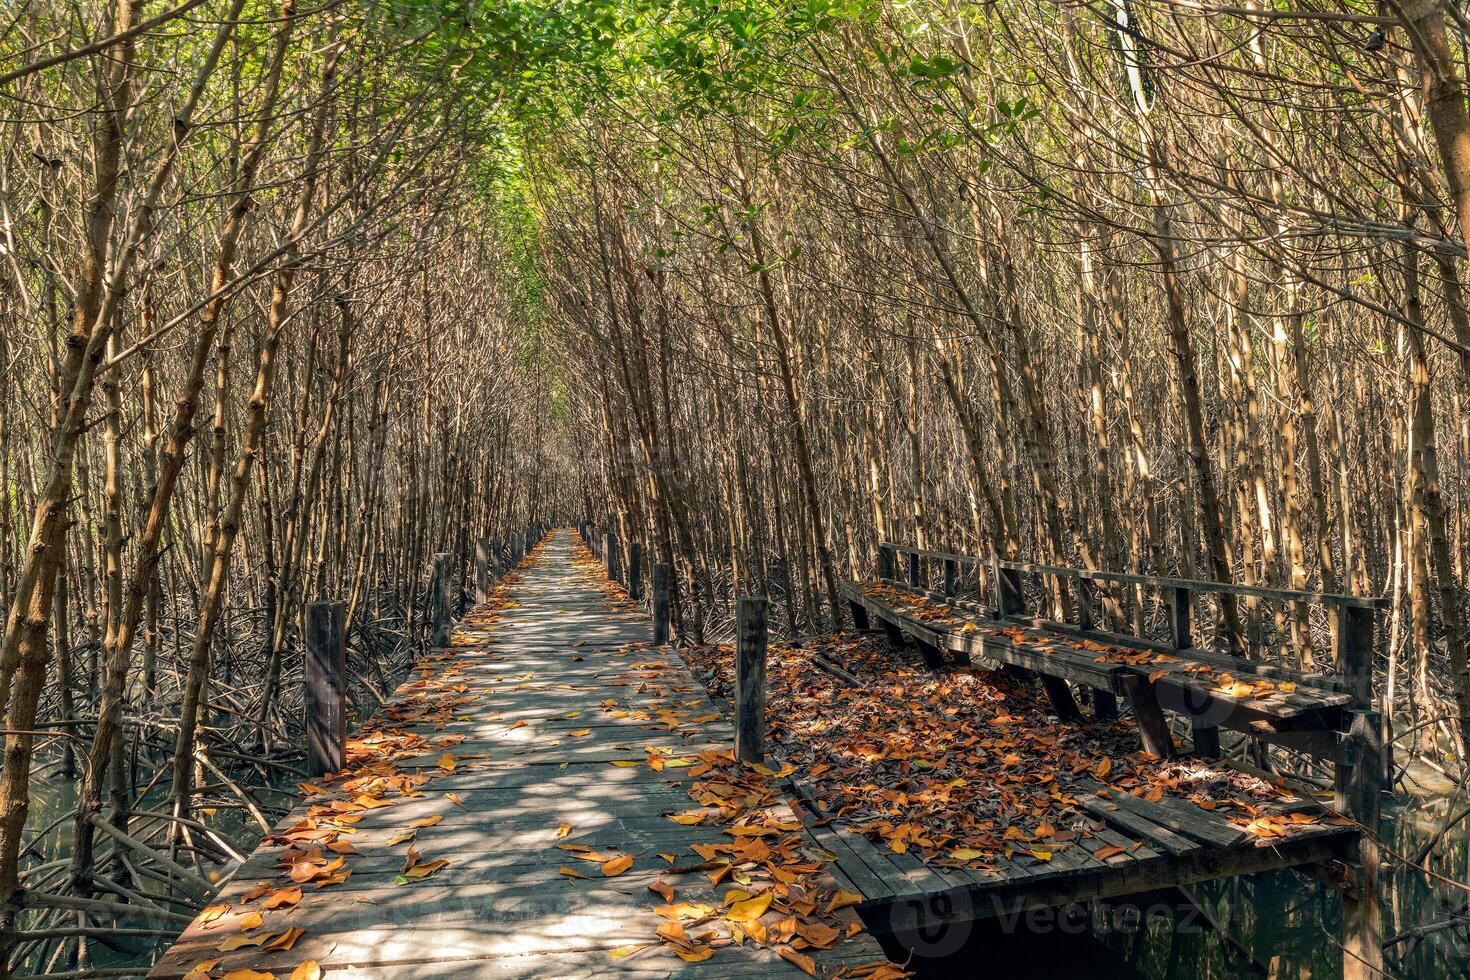 hölzern Gehweg im das Mangrove Wald foto